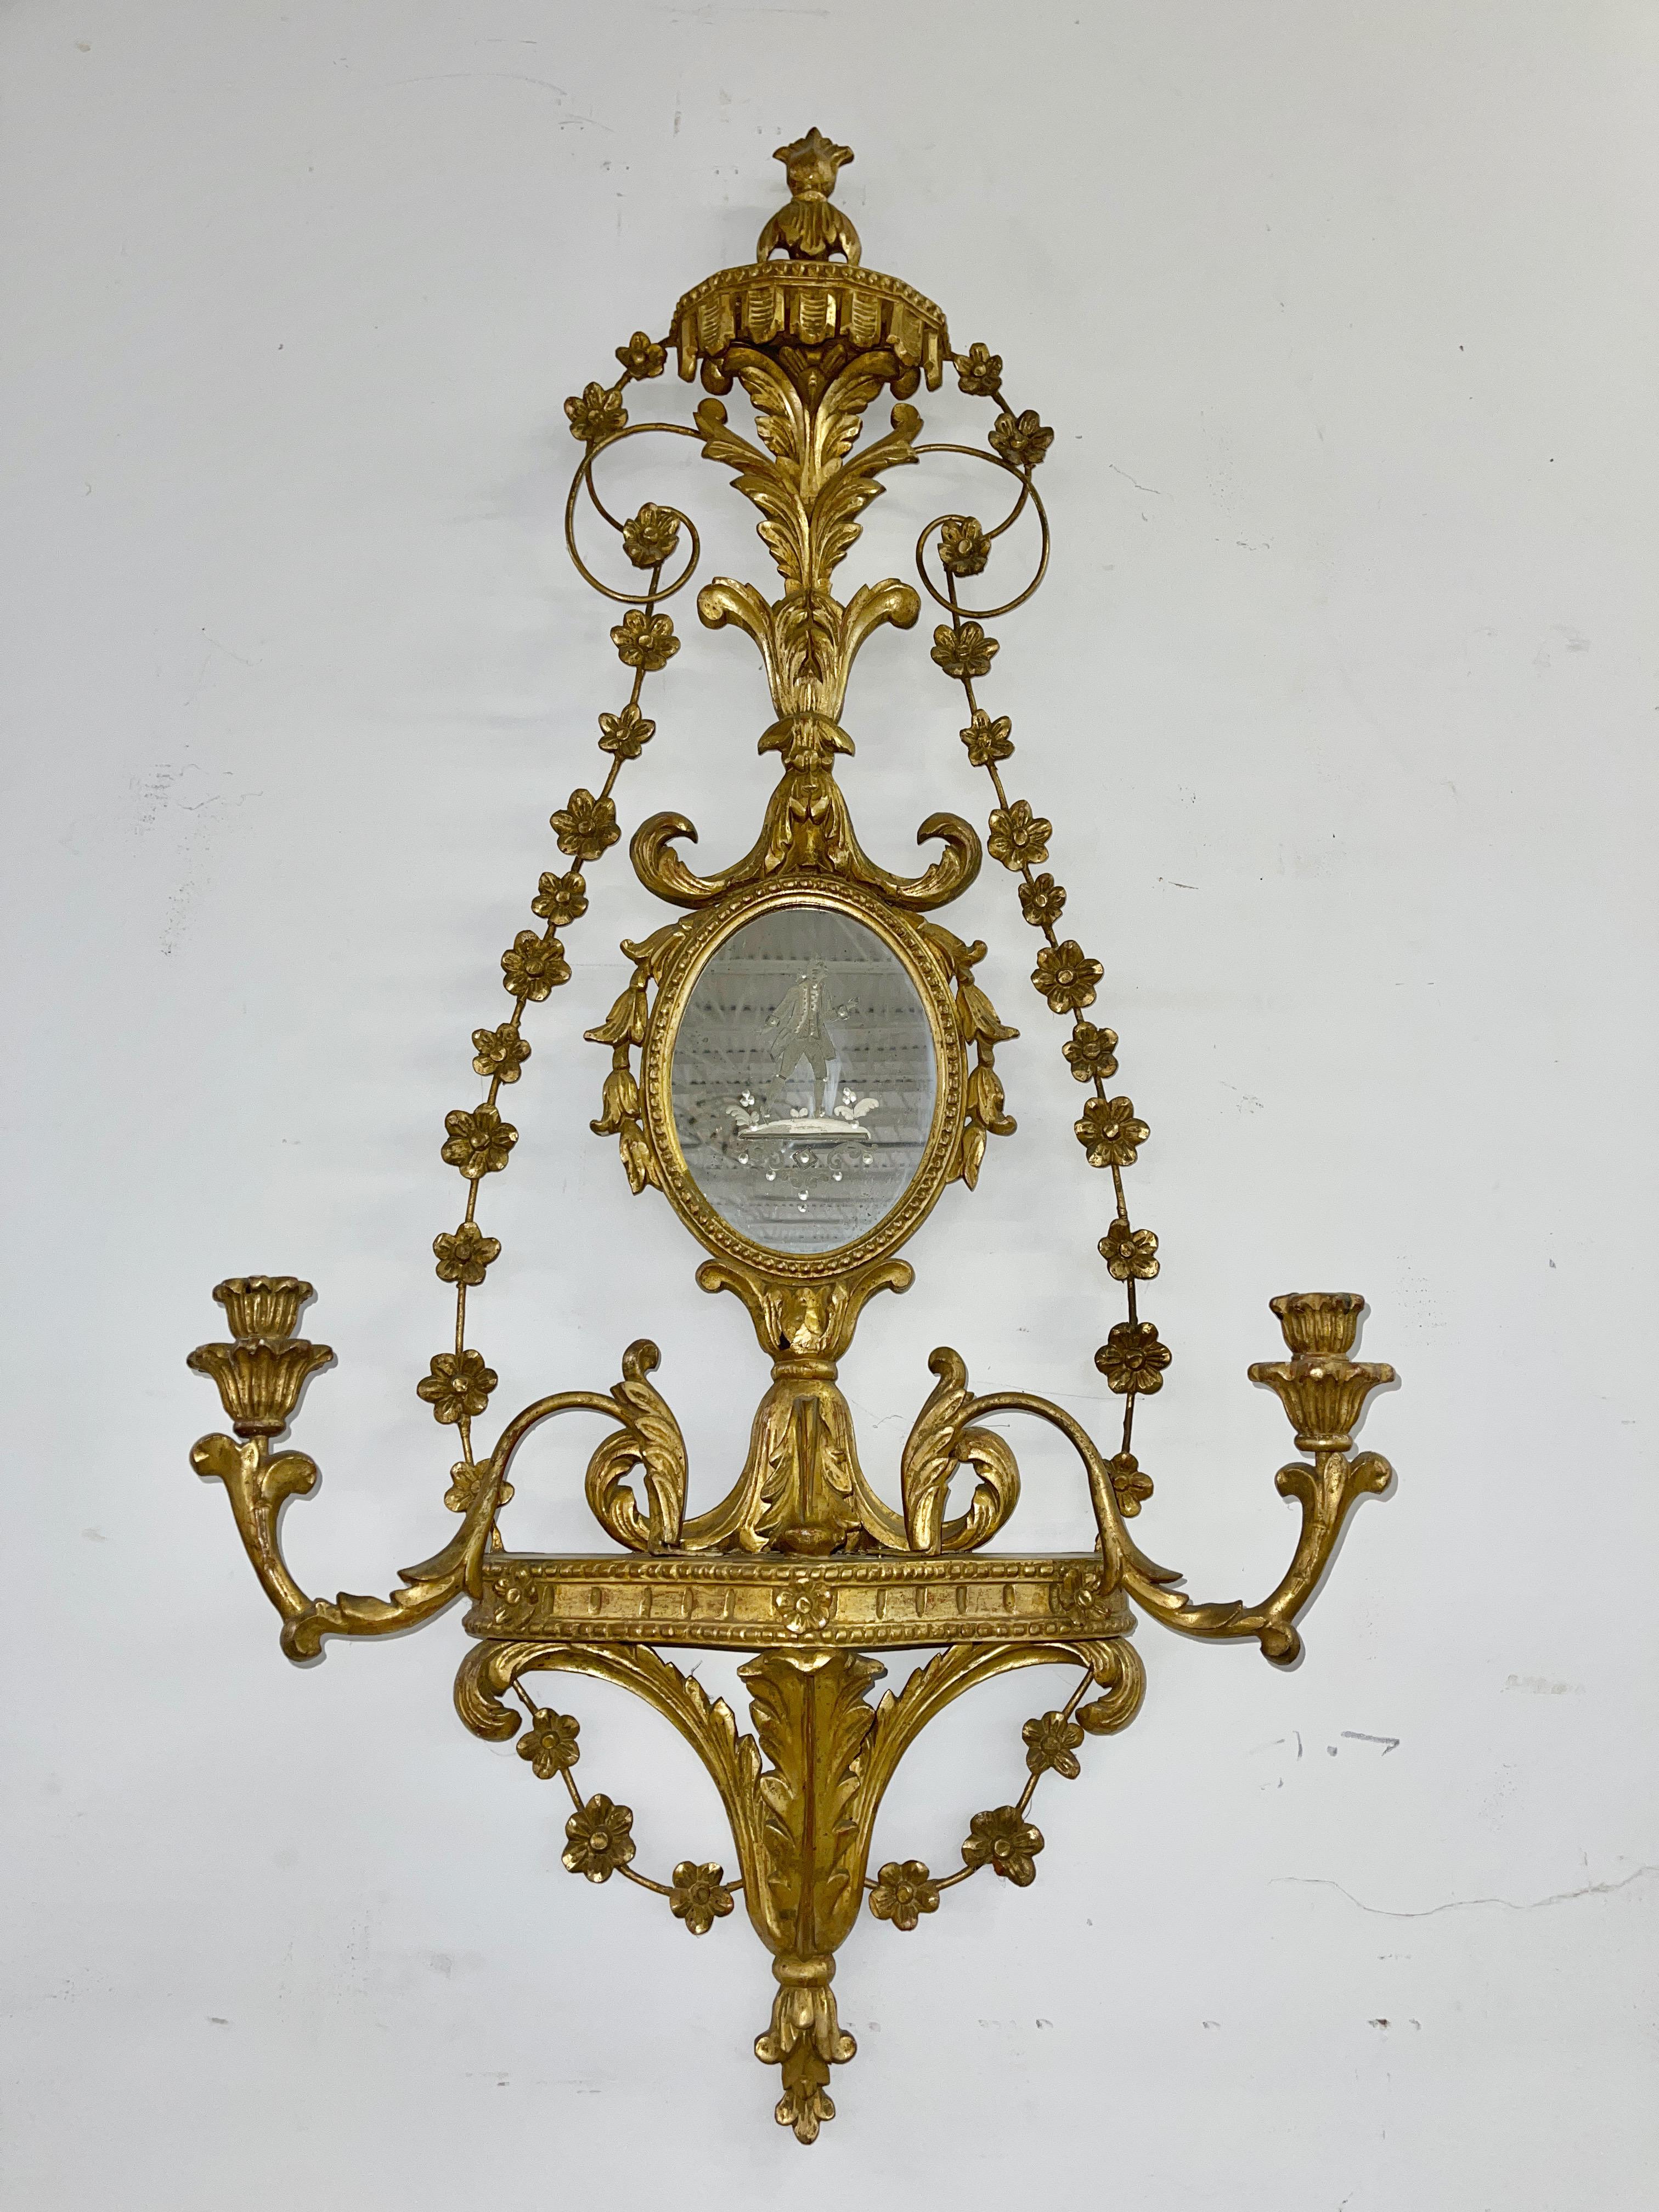 Sehr aufwendige Blattschnitzereien auf diesen italienischen Girondolenspiegeln aus Vergoldungsholz mit Kerzenleuchtern. Spiegel mit eingravierten venezianischen Figuren, männlich und weiblich.